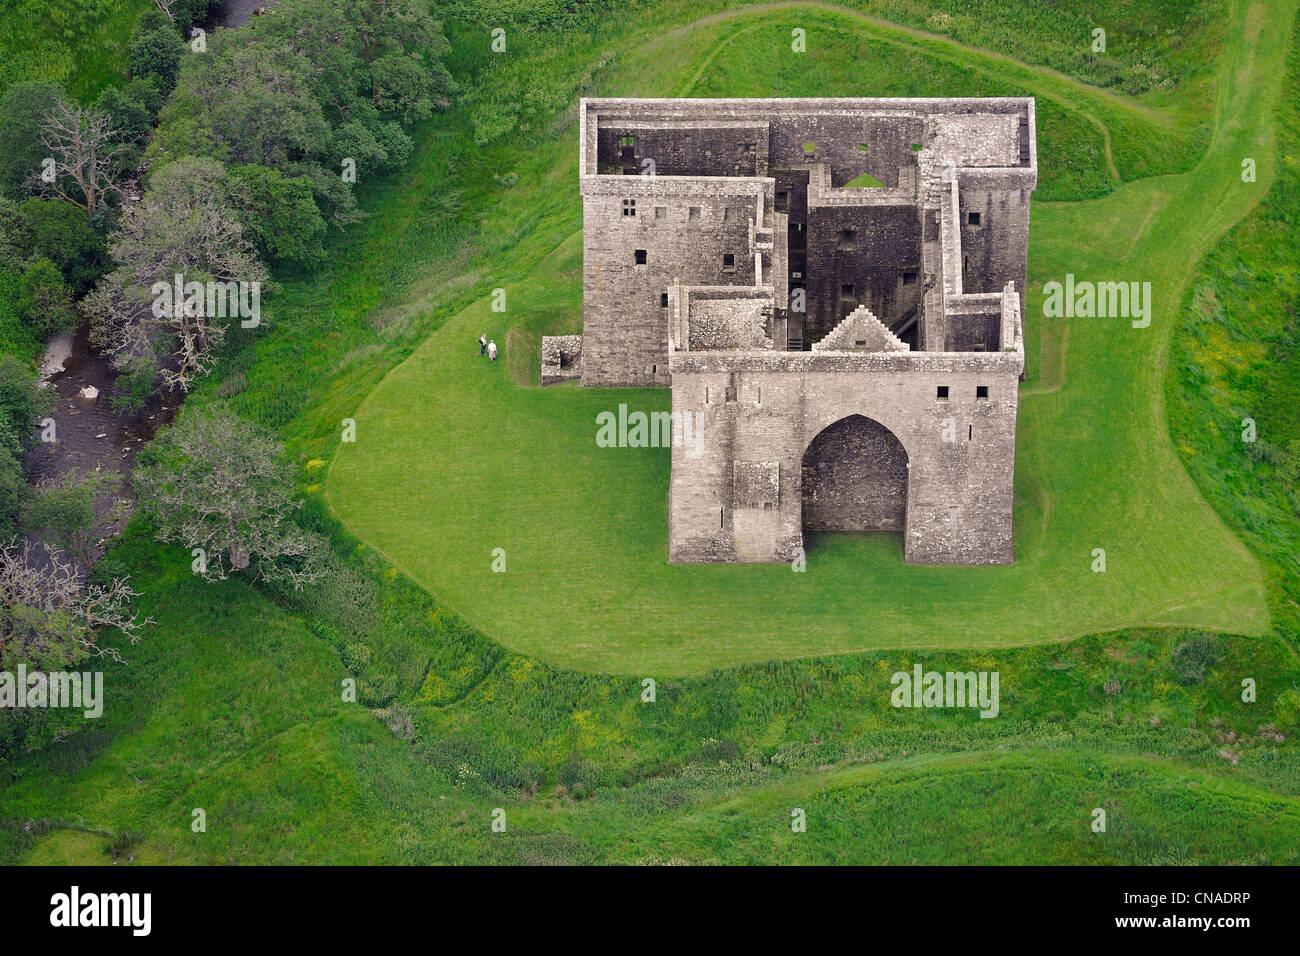 Royaume-uni, Ecosse, Frontières, Liddesdale Newcastleton, Château de l'Hermitage, construit aux xive et xve siècles (vue aérienne) Banque D'Images